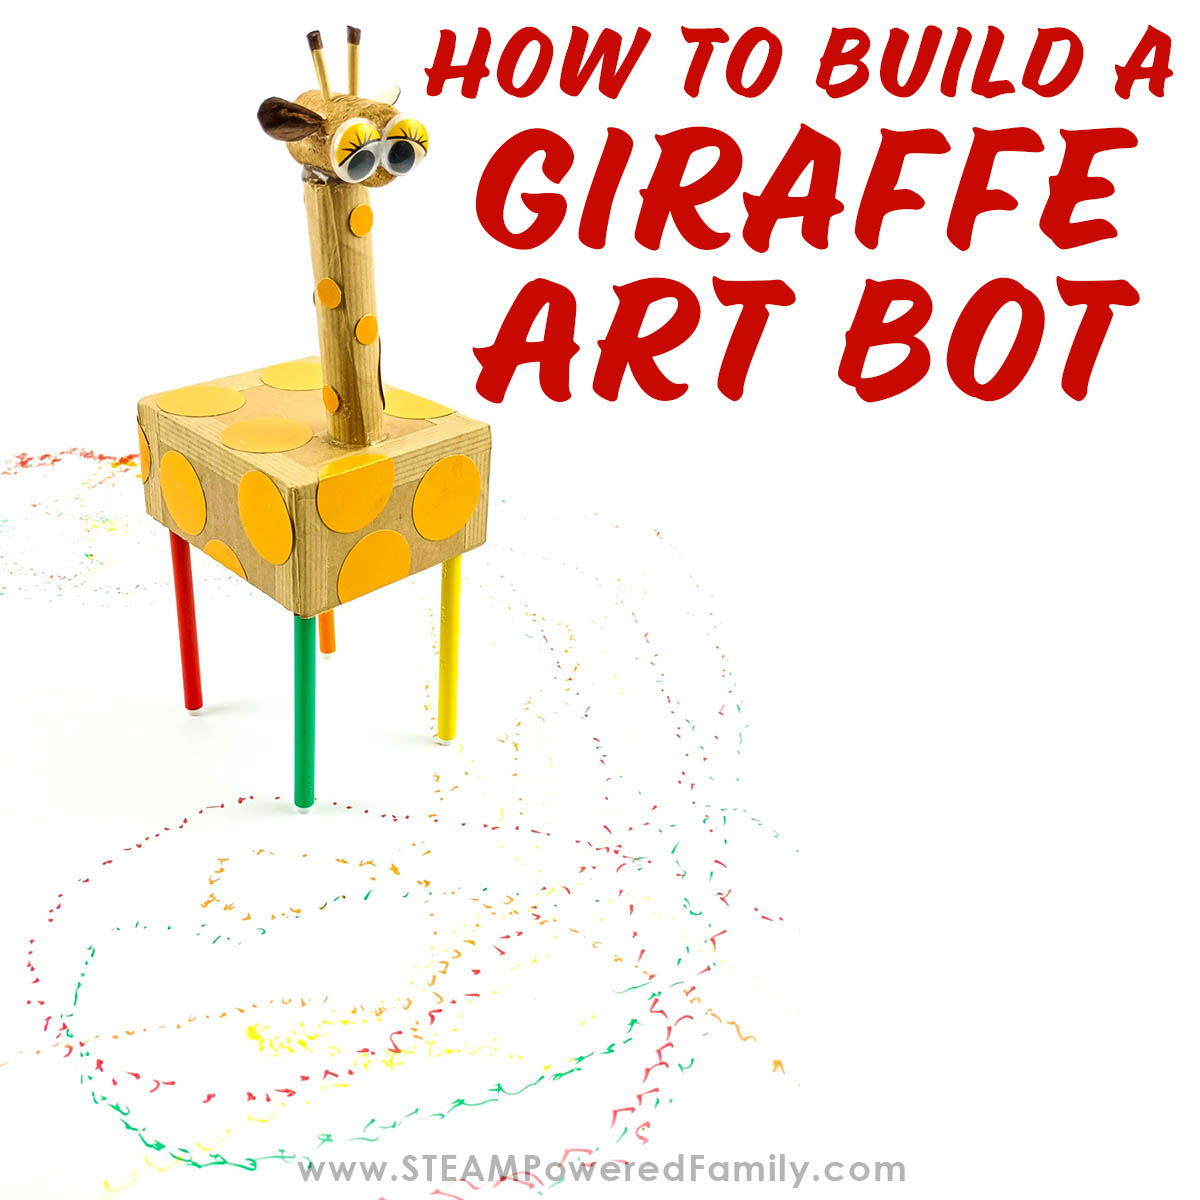 Build an Art Bot – Creative Robotics for Kids